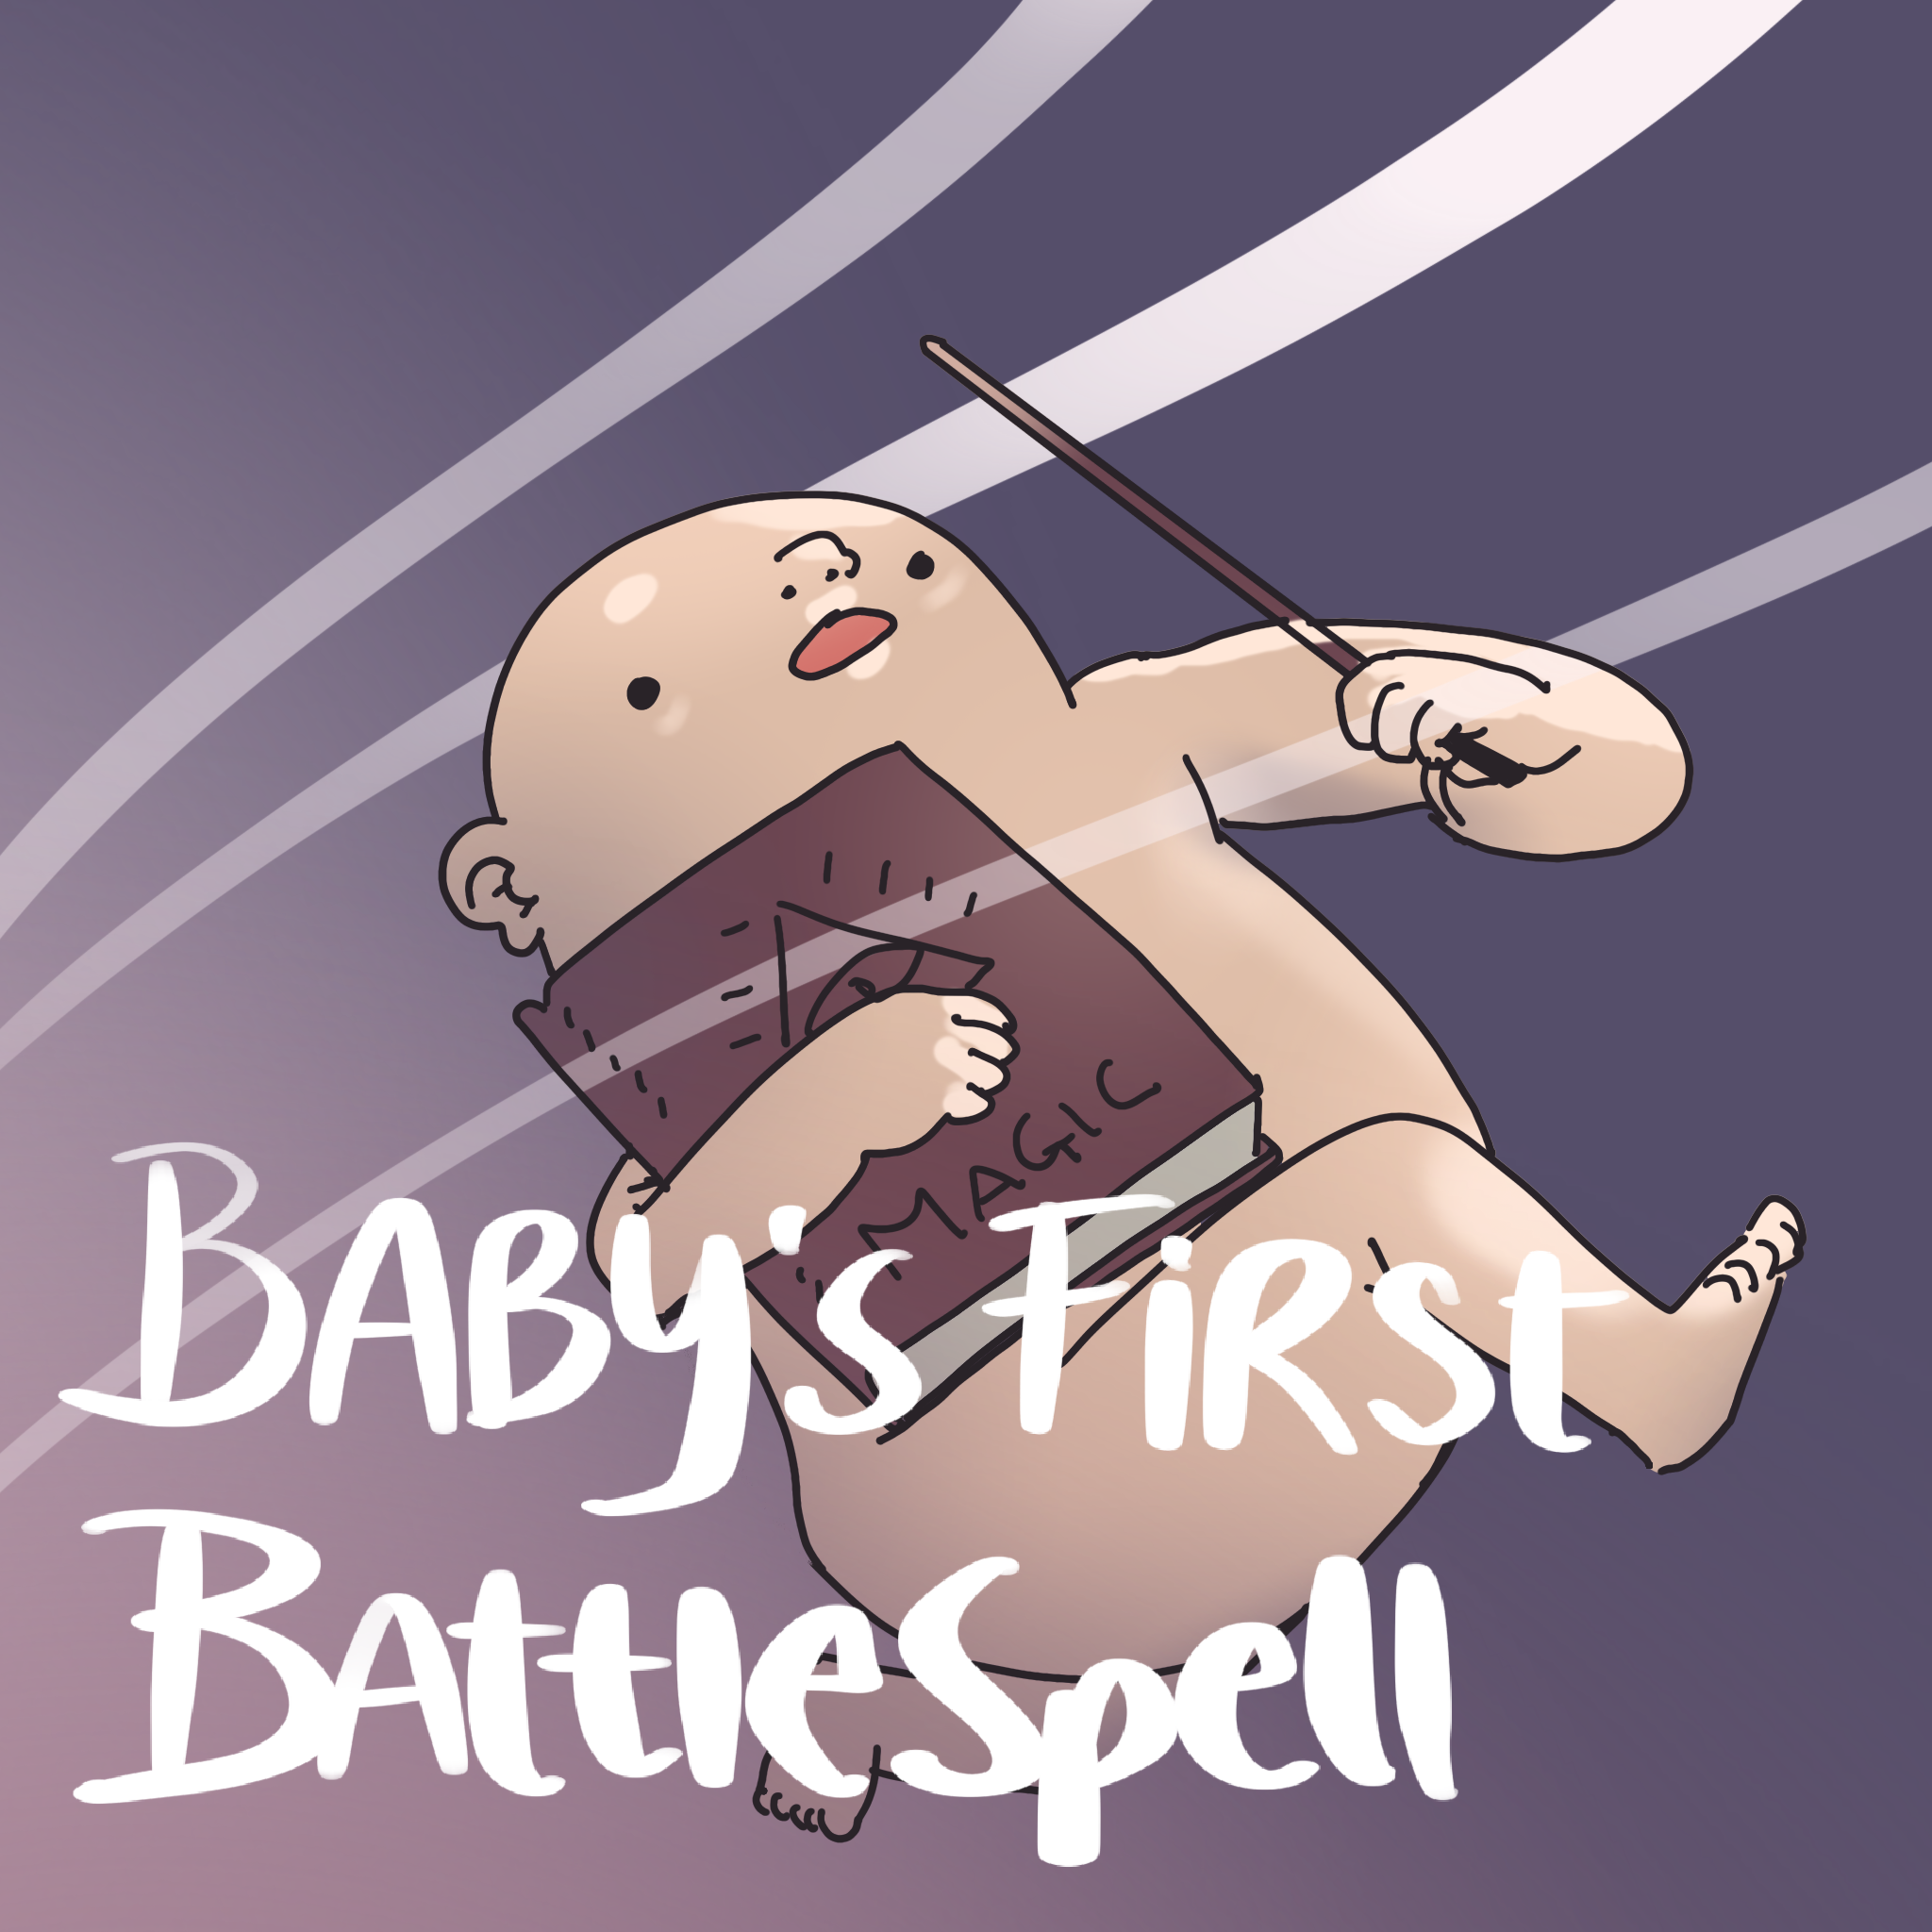 Baby's First Battlespell